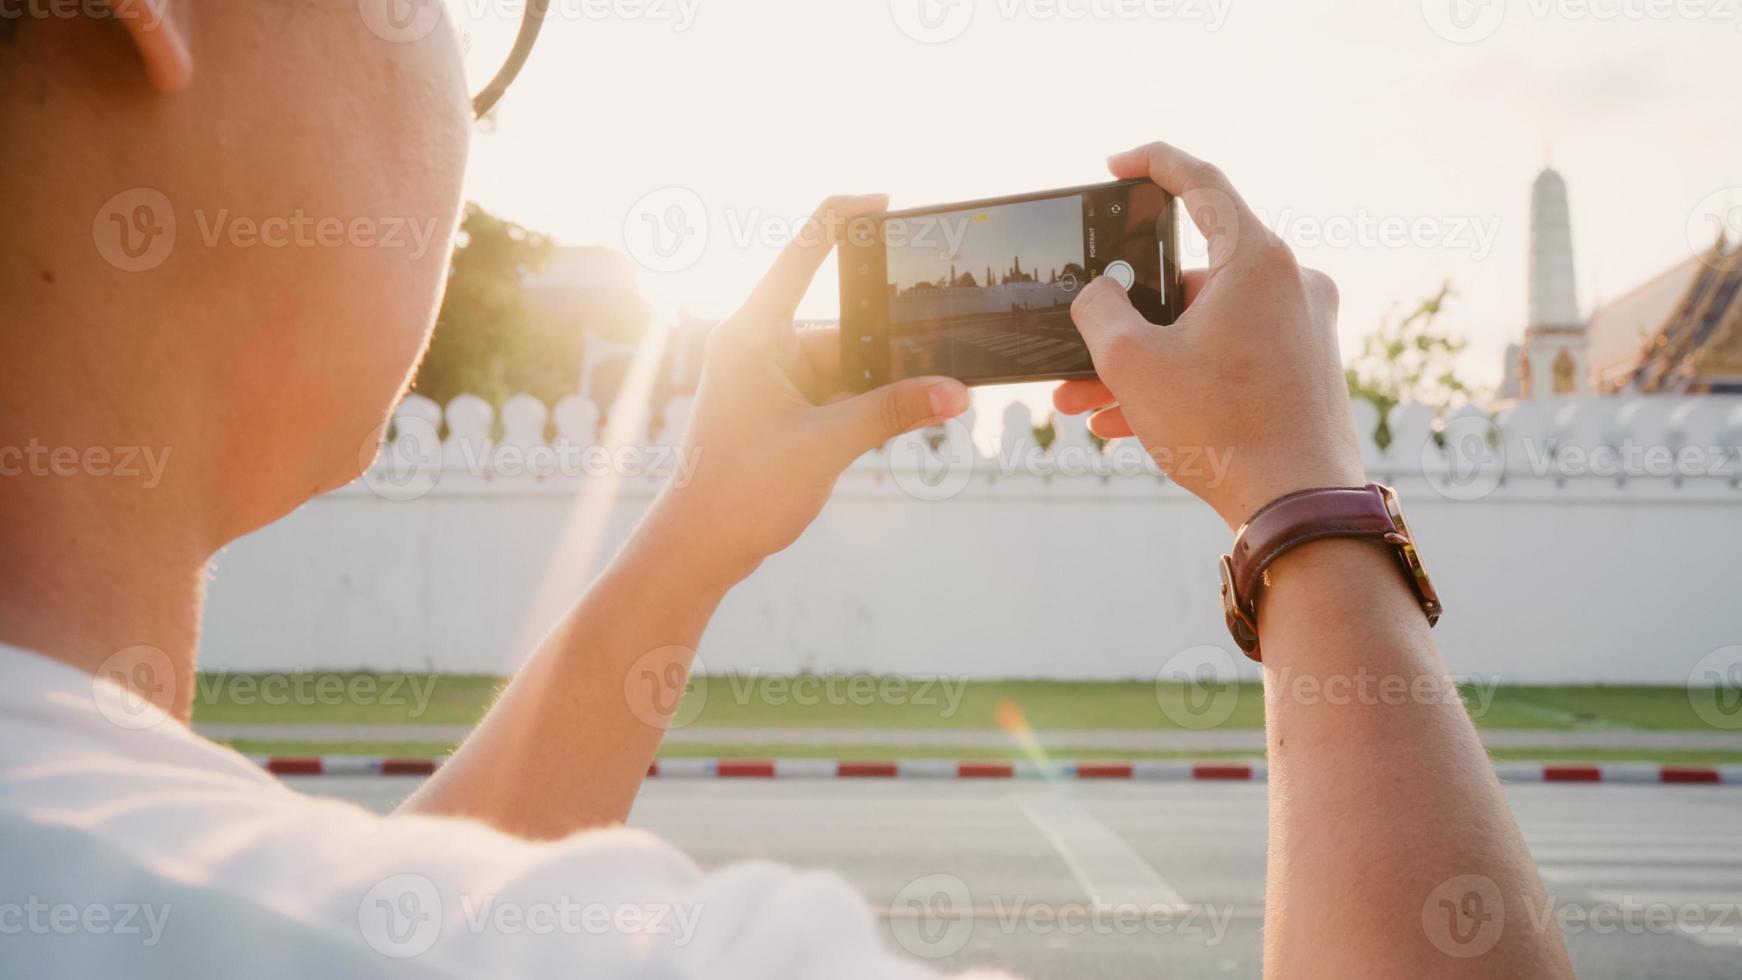 l'uomo asiatico del viaggiatore che usa il telefono cellulare per scattare una foto mentre trascorre un viaggio di vacanza a bangkok, in tailandia, il maschio si gode il viaggio in un punto di riferimento straordinario al tramonto. gli uomini di stile di vita viaggiano nel concetto di città.